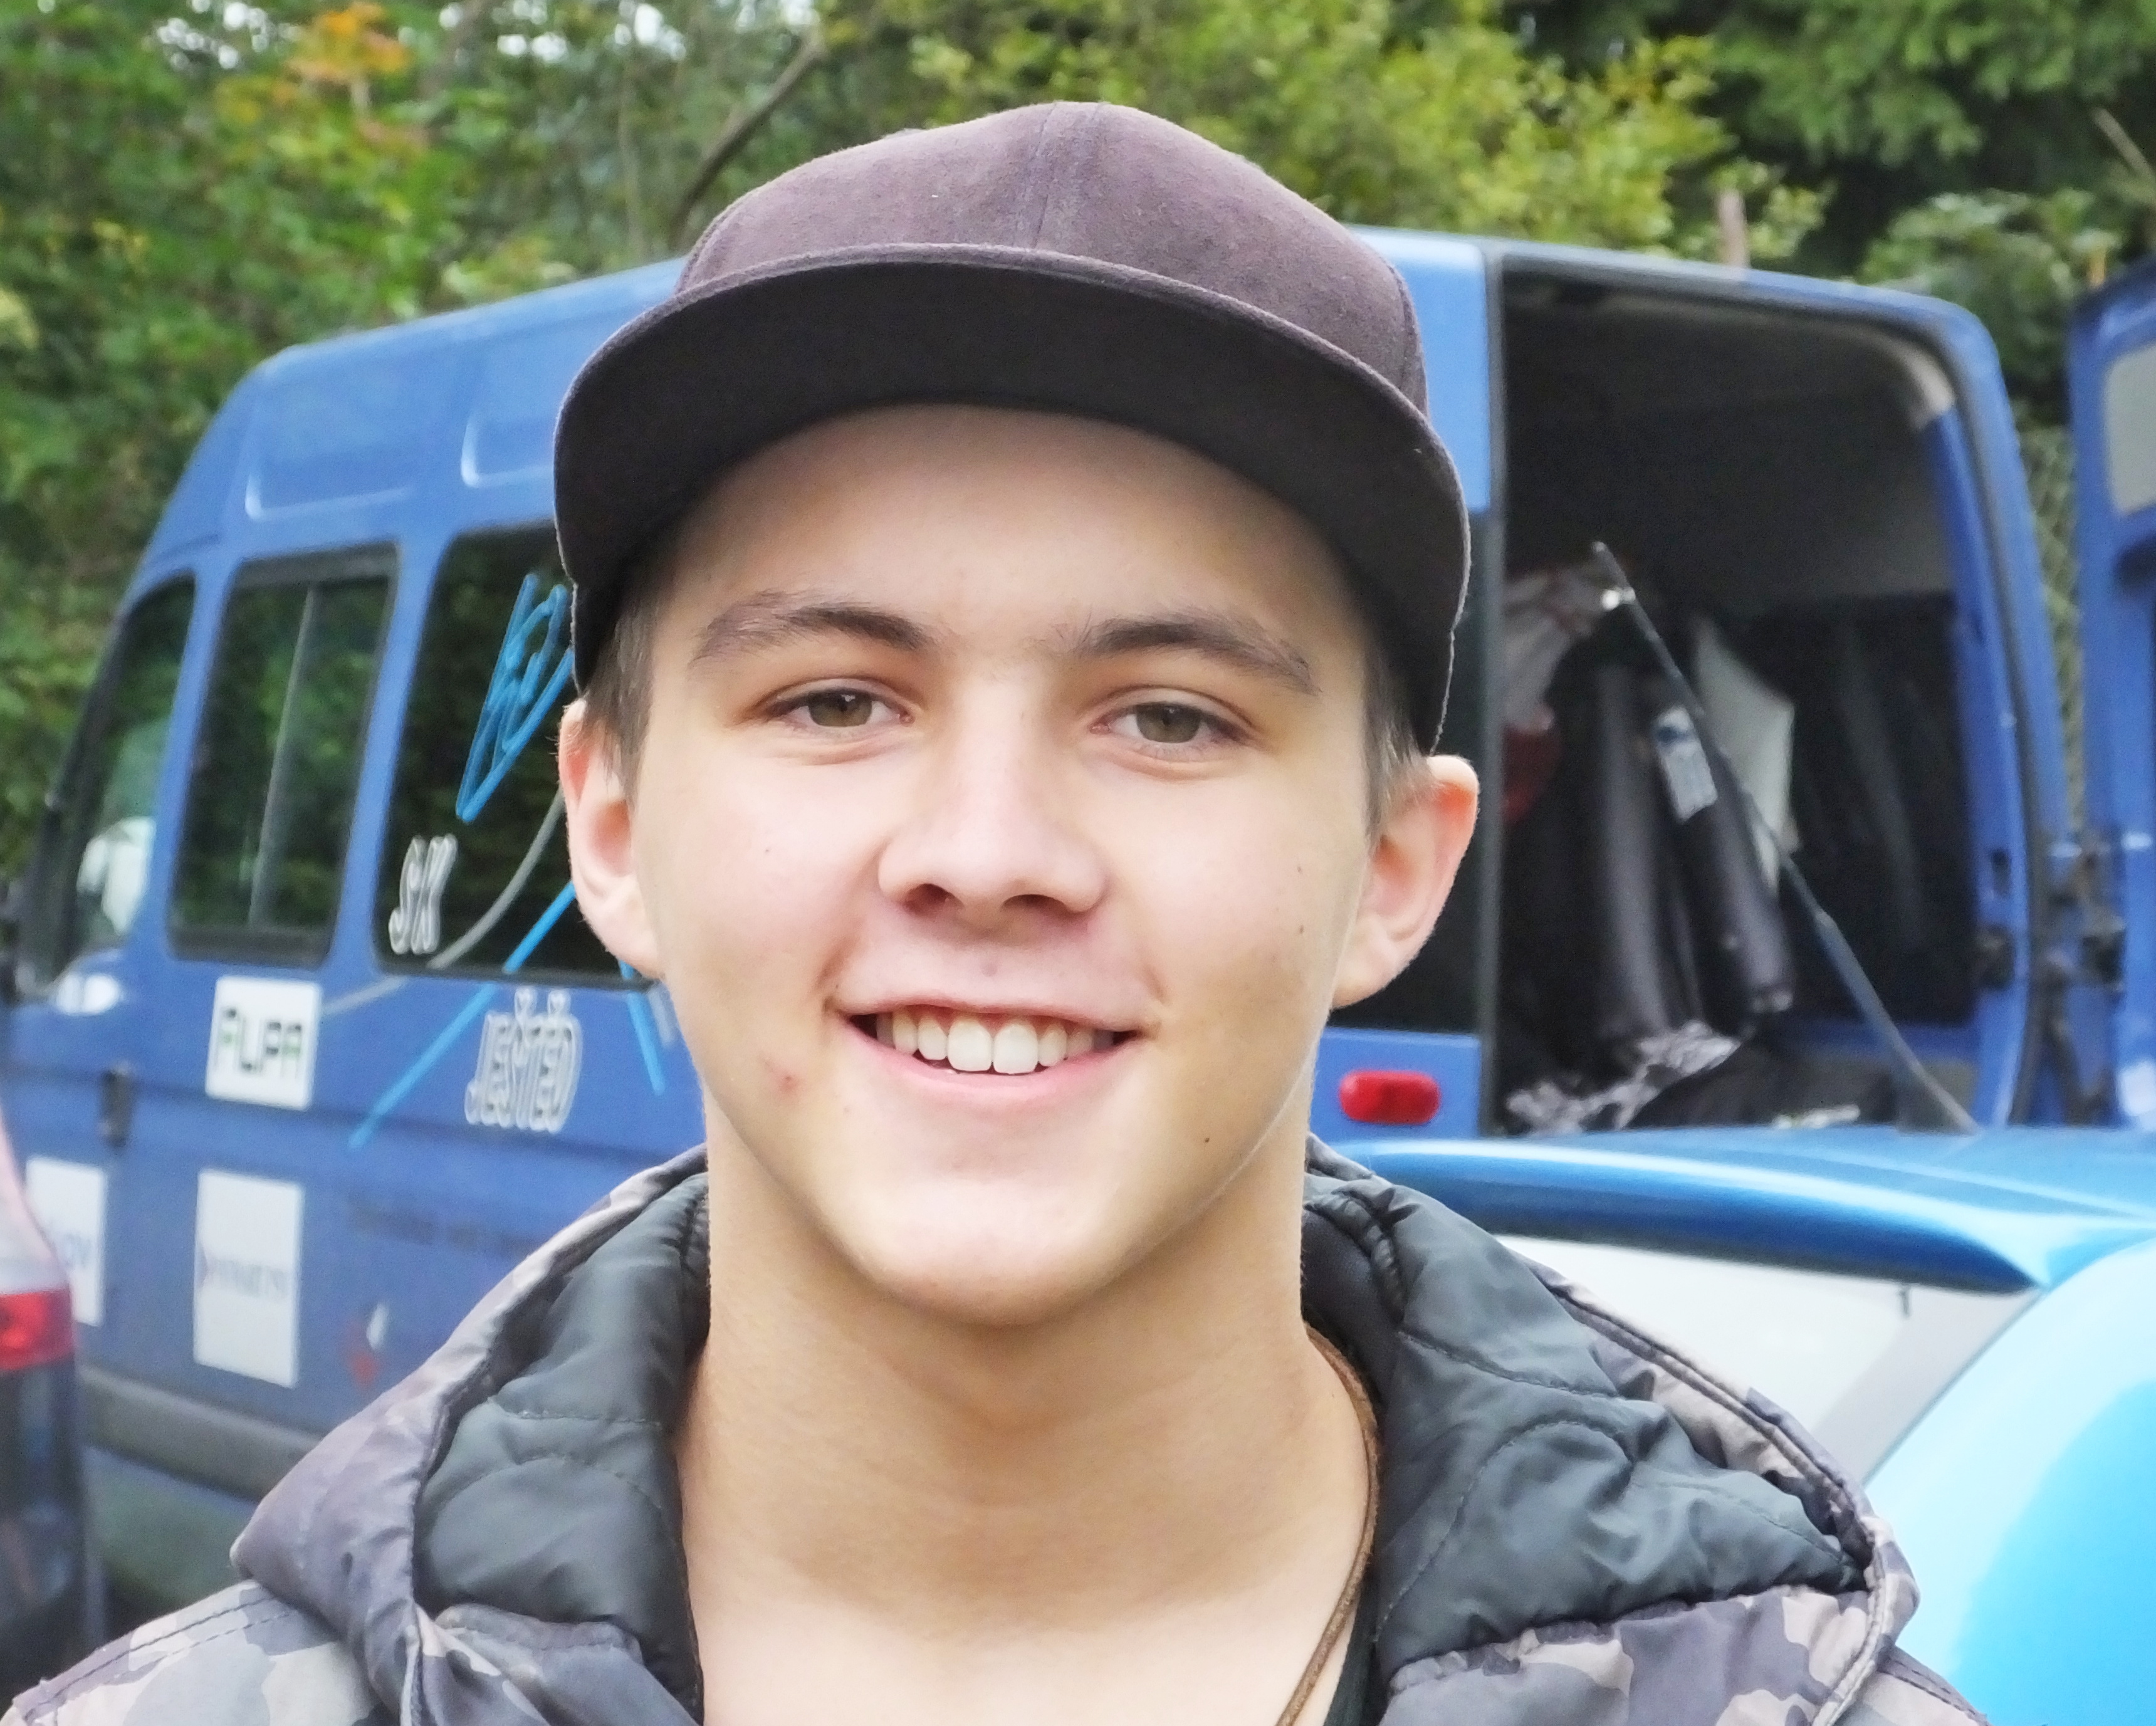 Nadějný patnáctiletý skokan na lyžích František Lejsek sní o tom, že se zúčastní olympijských her. ČRo Liberec věří, že s jeho nadšením a odhodláním se mu sen splní